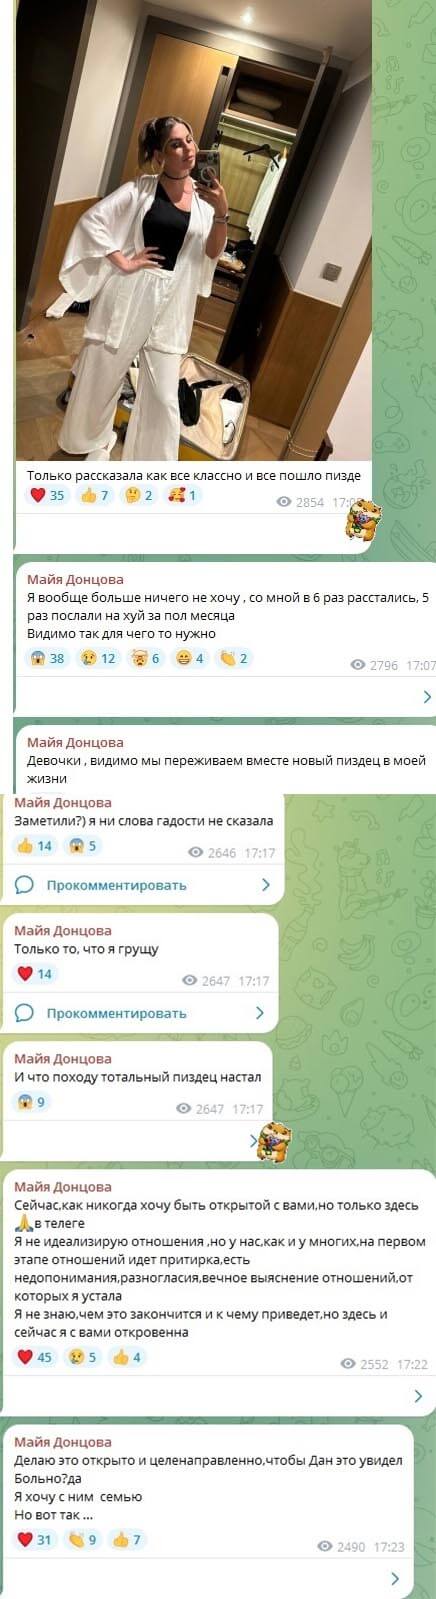 Переписка Майи Донцовой вконтакте